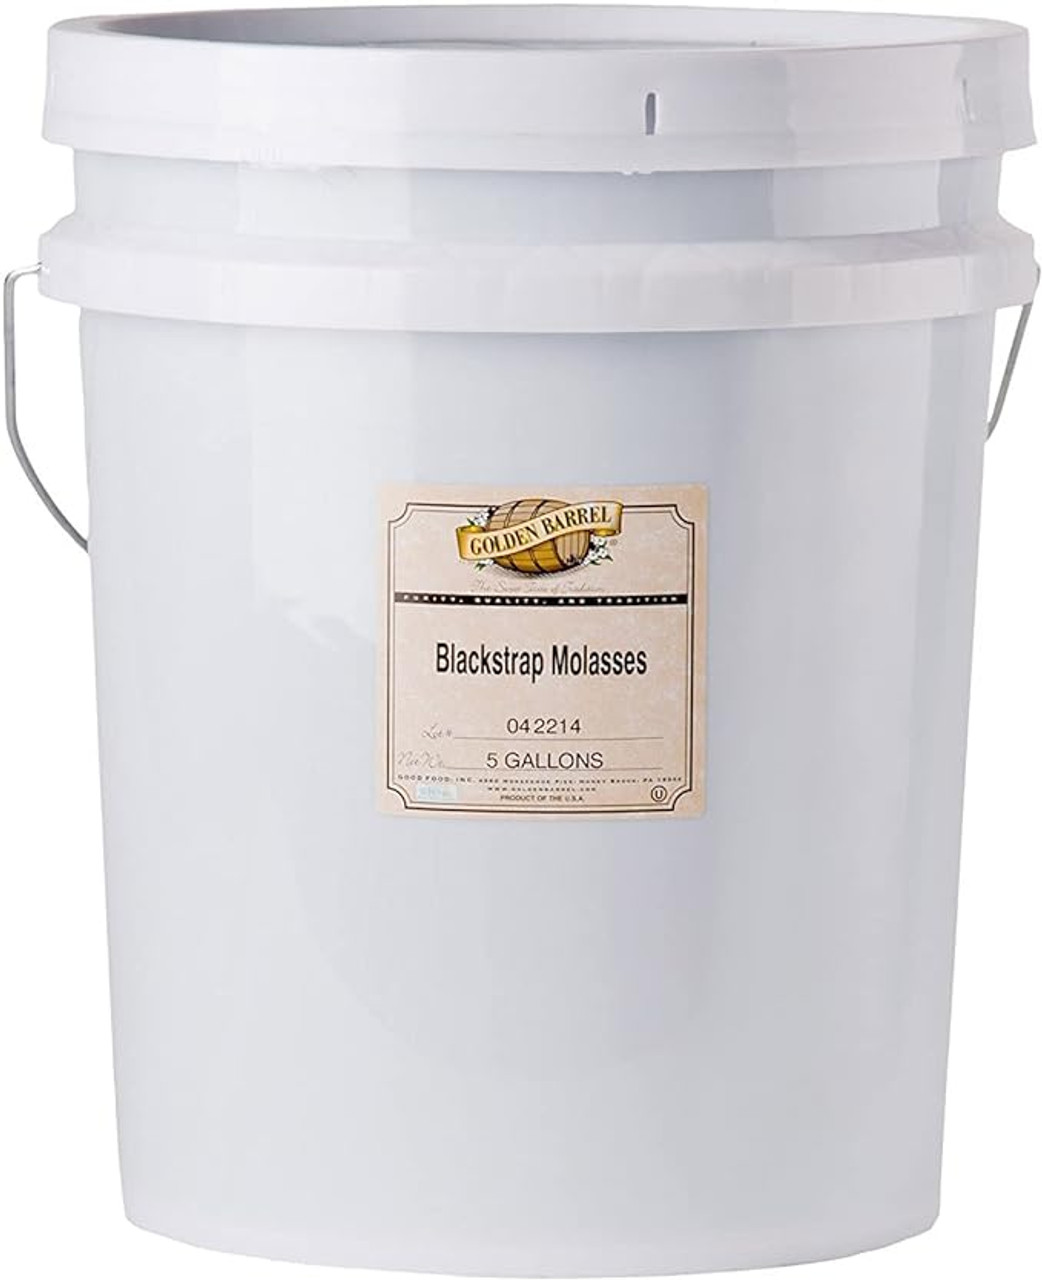 Golden Barrel 5 Gallon Blackstrap Molasses Bulk Food Service I Pallet of 36 I Total 72 Gallons - Chicken Pieces